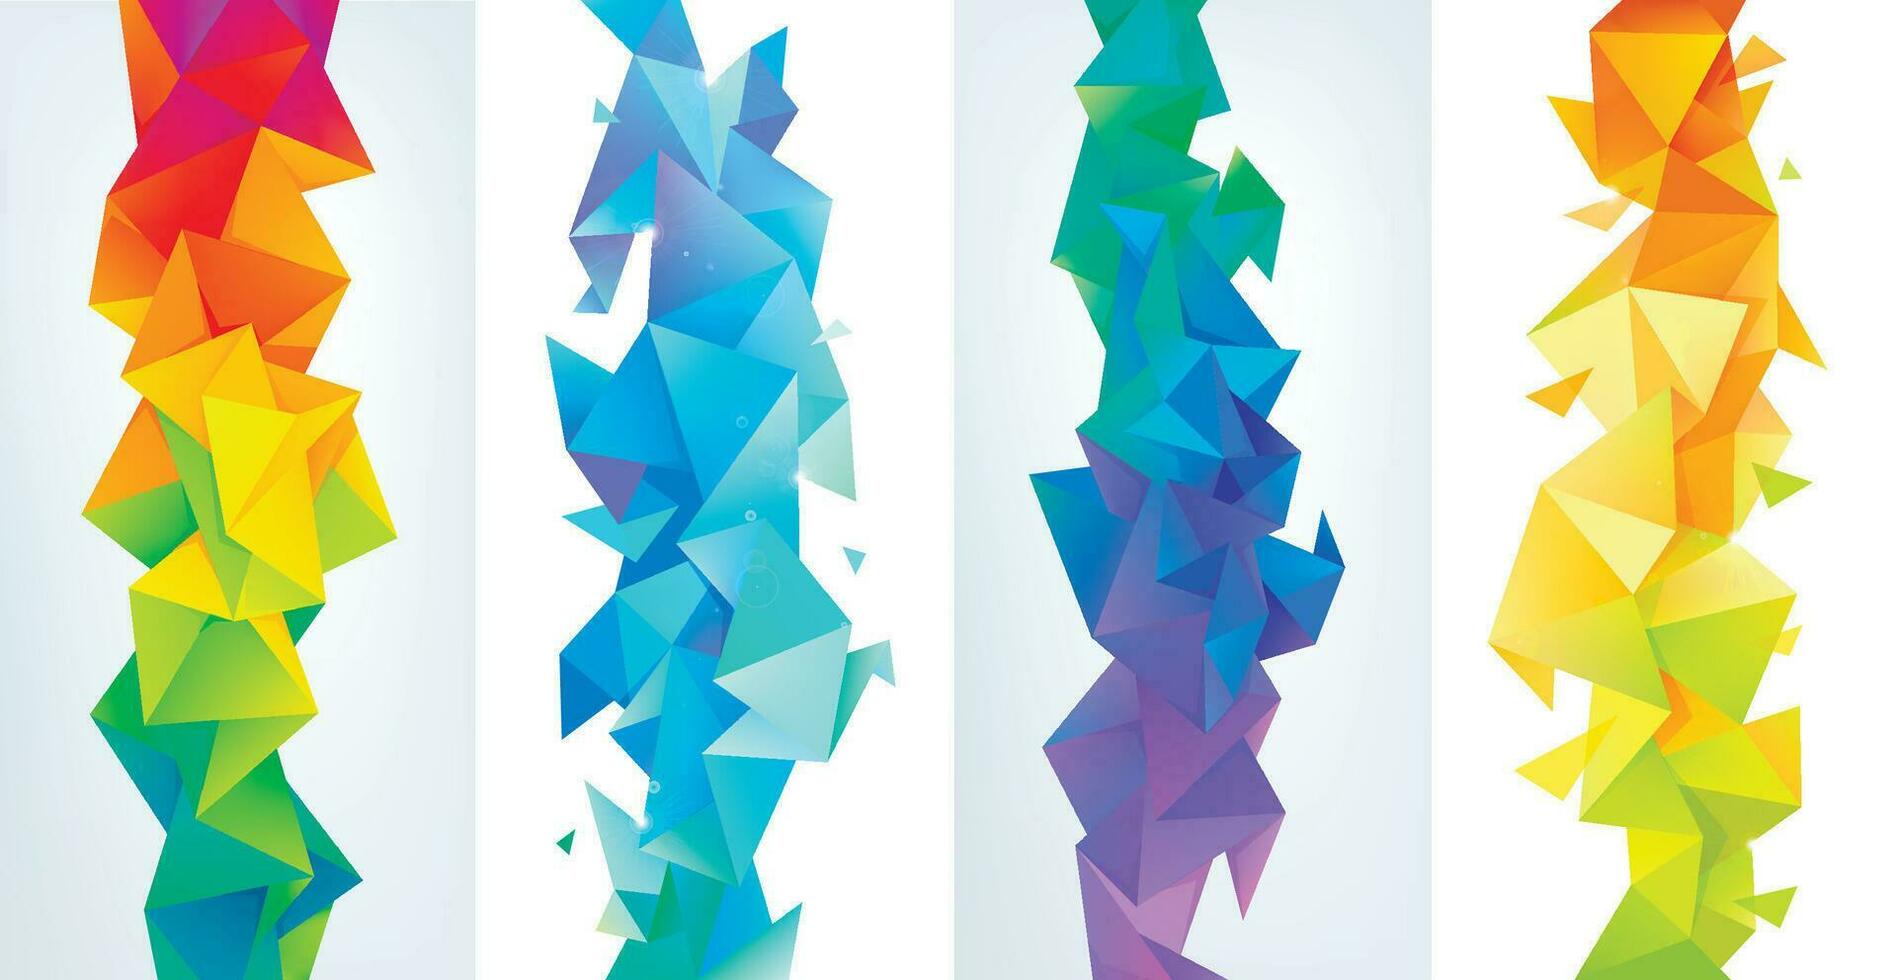 vektor uppsättning av blå, gul färgrik abstrakt aspekt, låg poly geometrisk triangel bakgrunder. 3d kristall färgrik former, banderoller, vertikal orientering